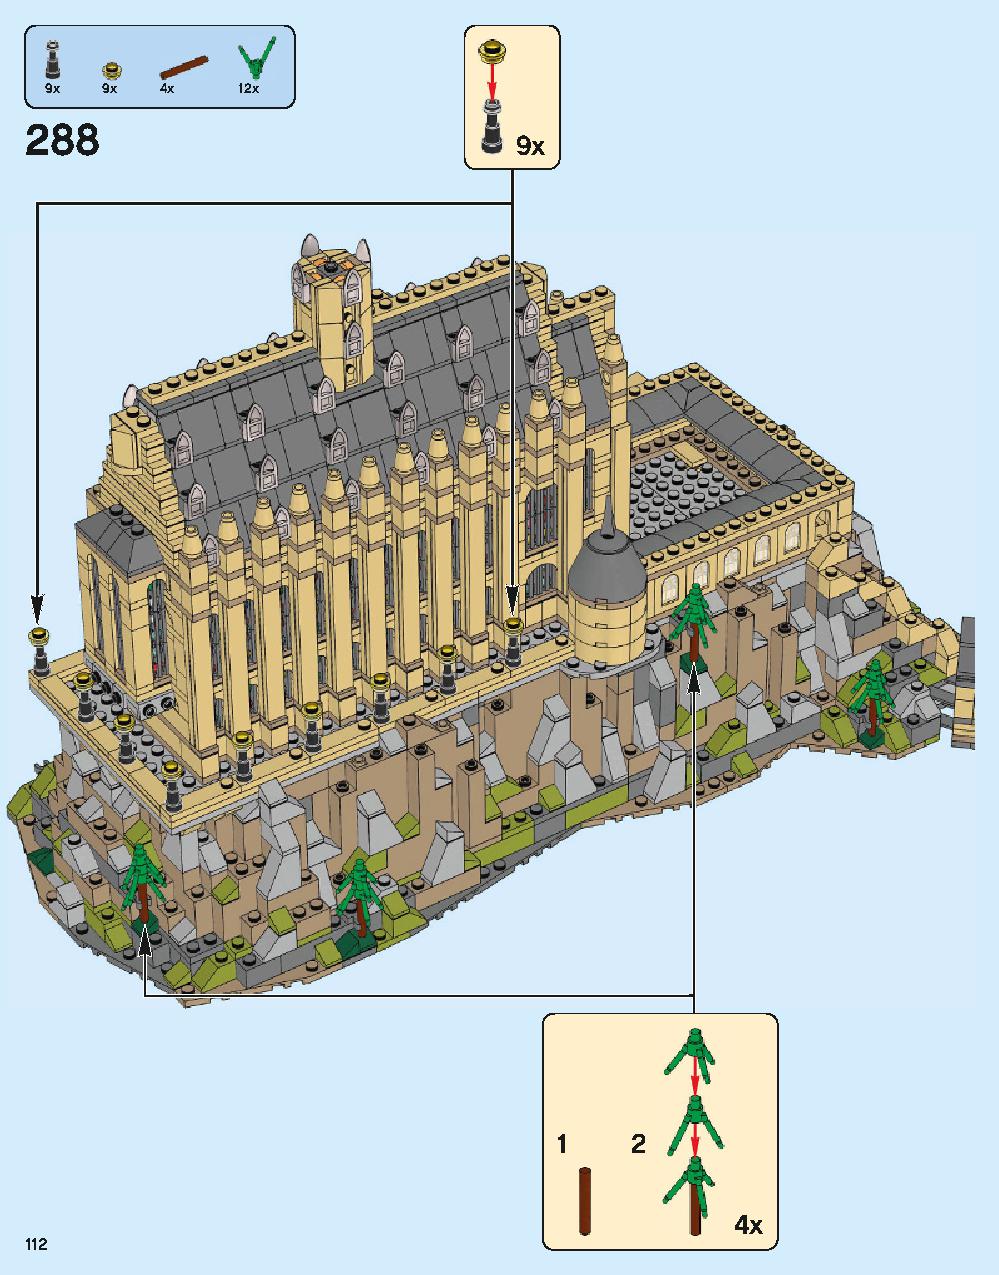 ホグワーツ城 71043 レゴの商品情報 レゴの説明書・組立方法 112 page